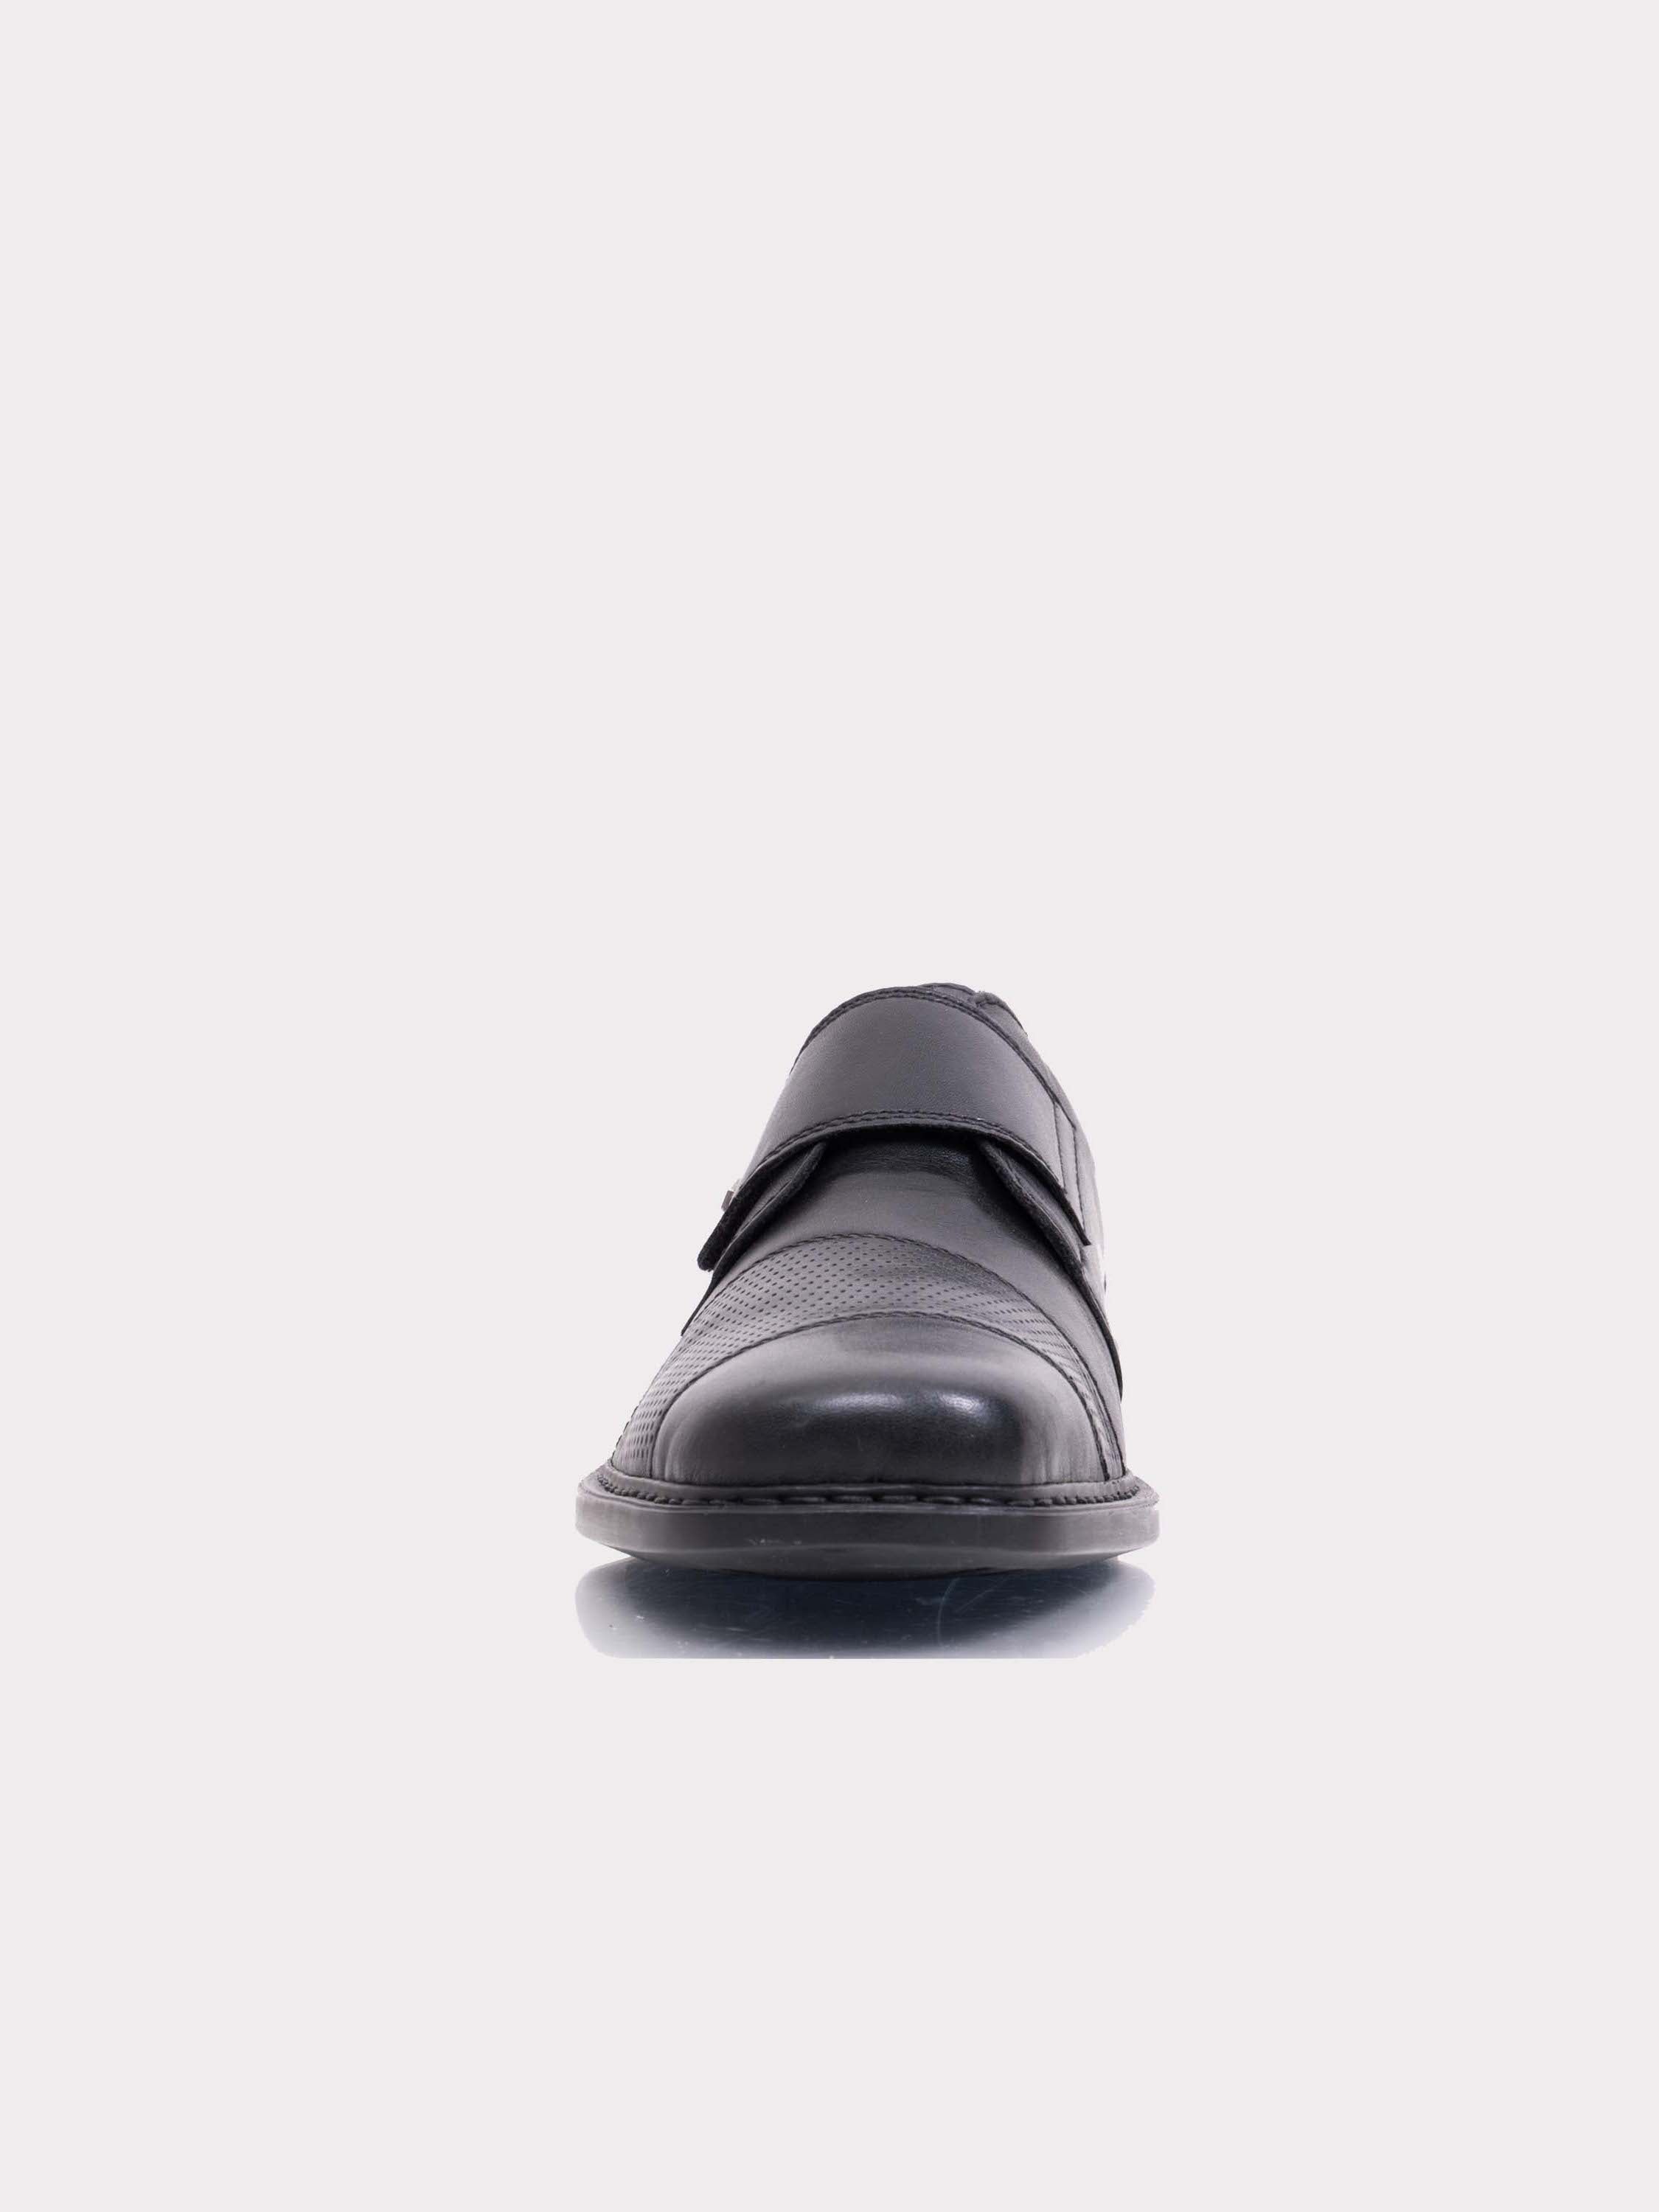 Rieker B0857 Men's Hook & Loop Formal Shoes #color_Black